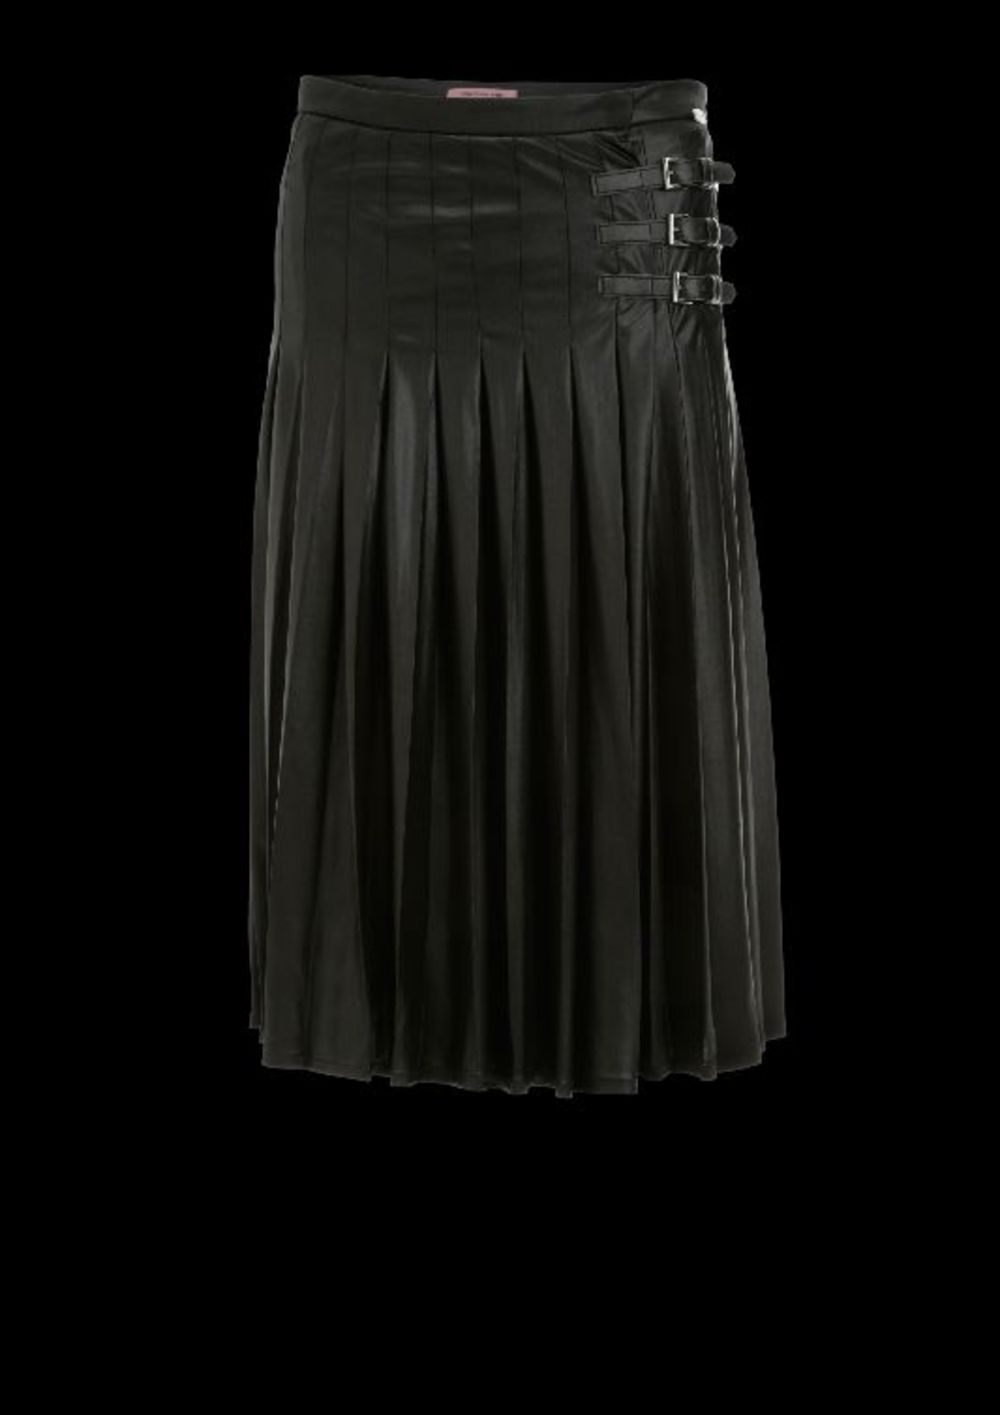 Suknja FORNARINA, cena: 10490 din.